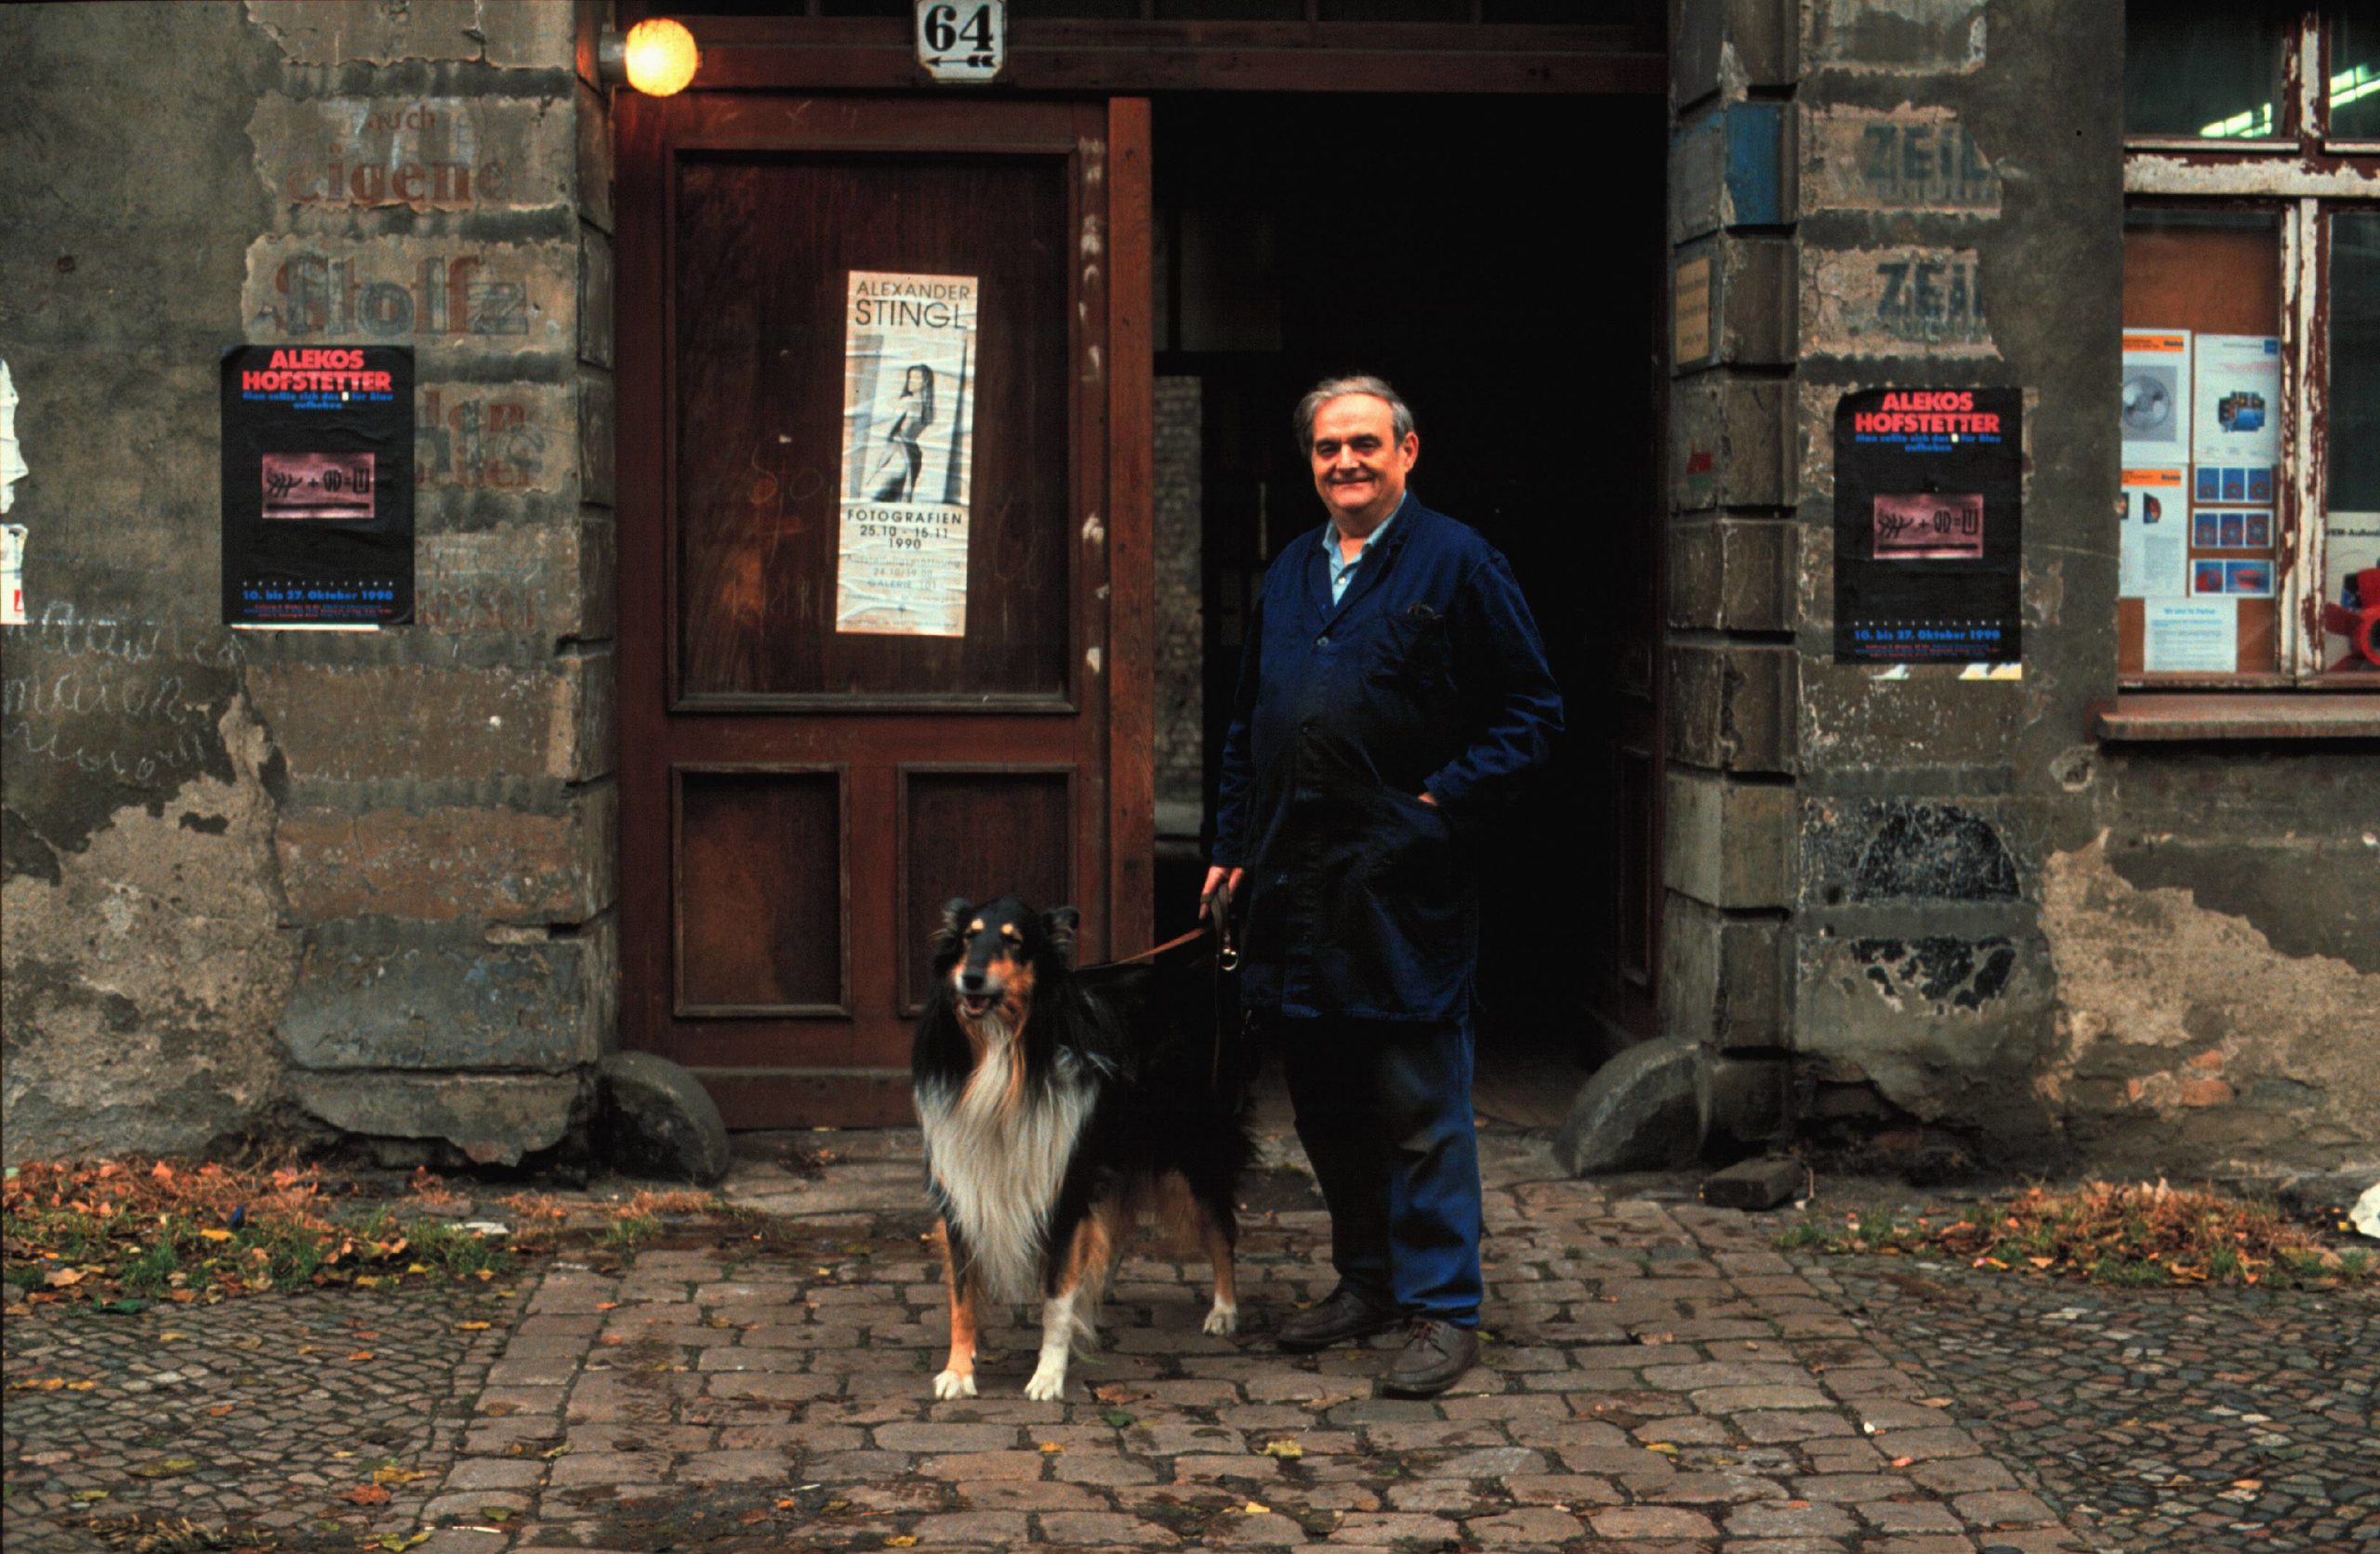 Mann mit Hund vor einem Hauseingang in der Wörther Strasse, Prenzlauer Berg, 1990. Foto: Imago/Rolf Zöllner